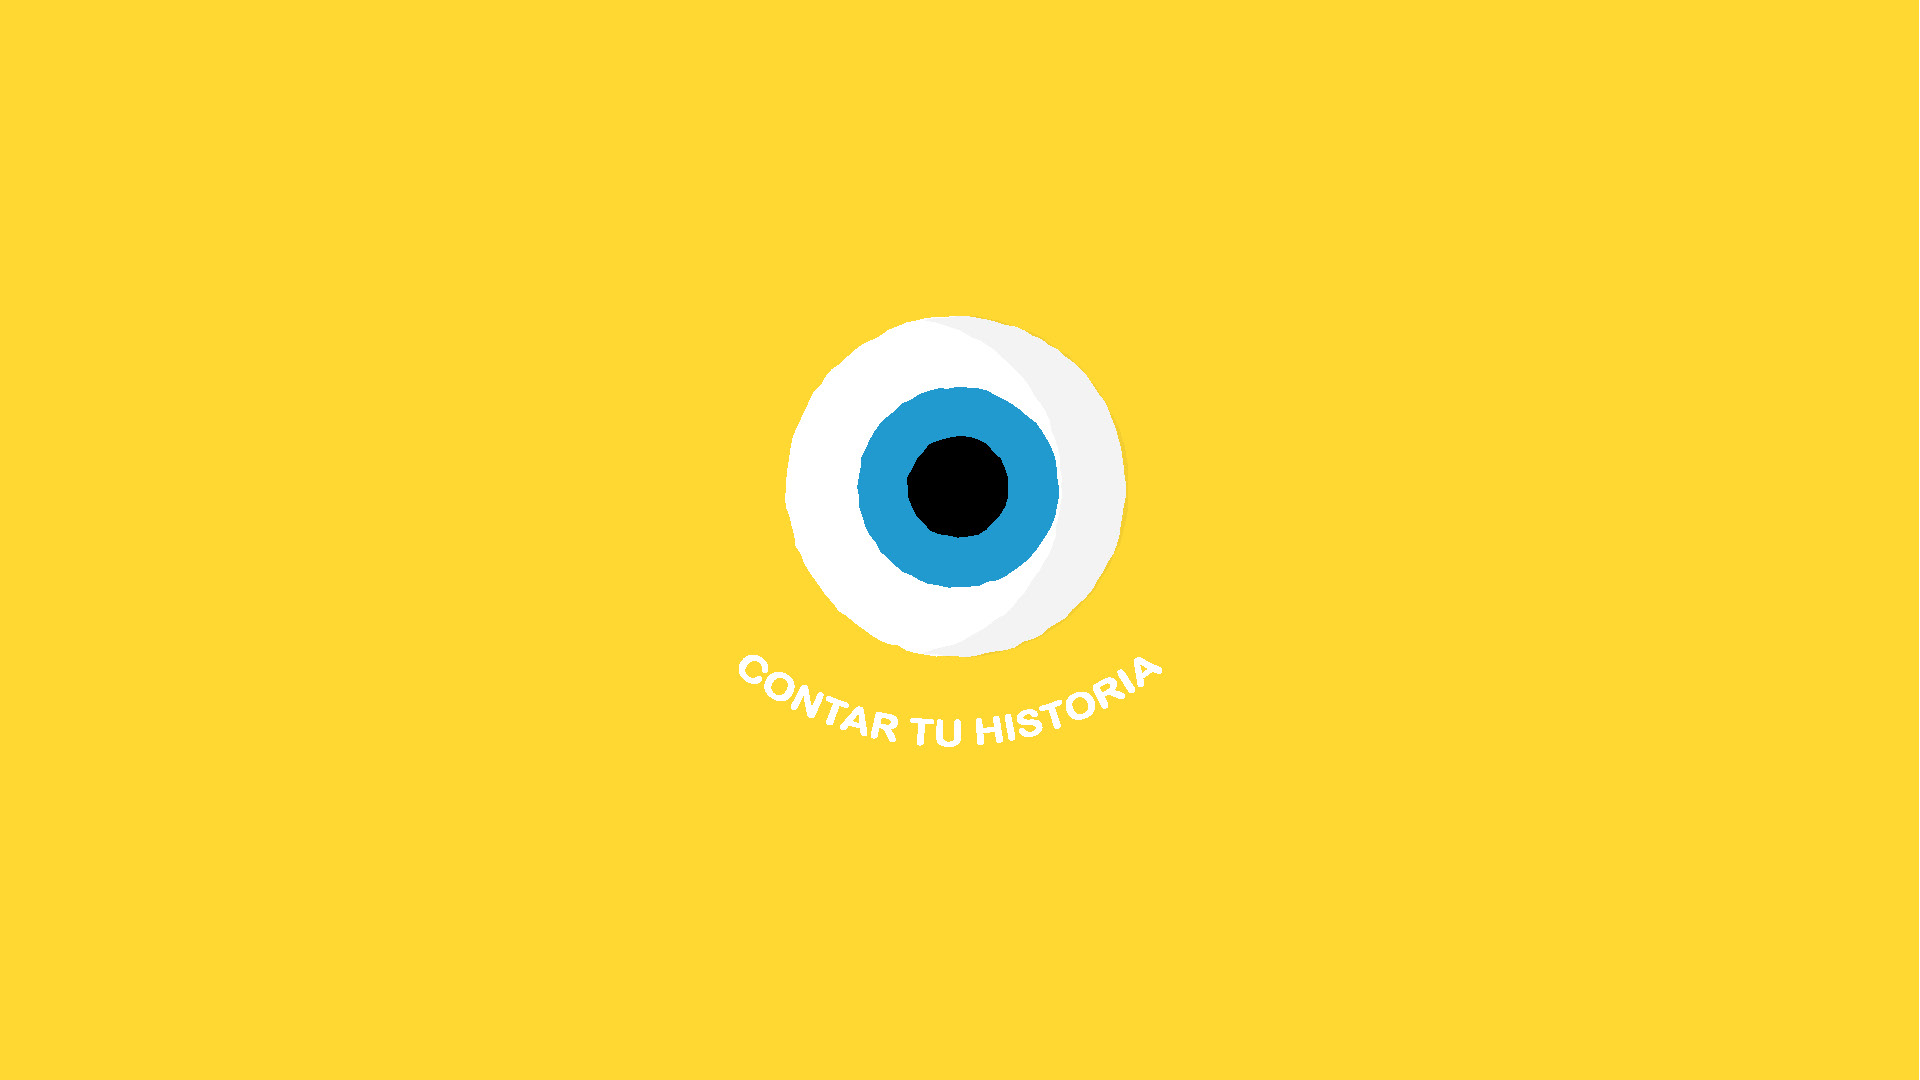 Imagen estática del vídeo corporativo de animación, con un fondo amarillo. En el centro, se encuentra un ojo con una pupila azul, y debajo del ojo, las palabras "contar tu historia" escritas en blanco.